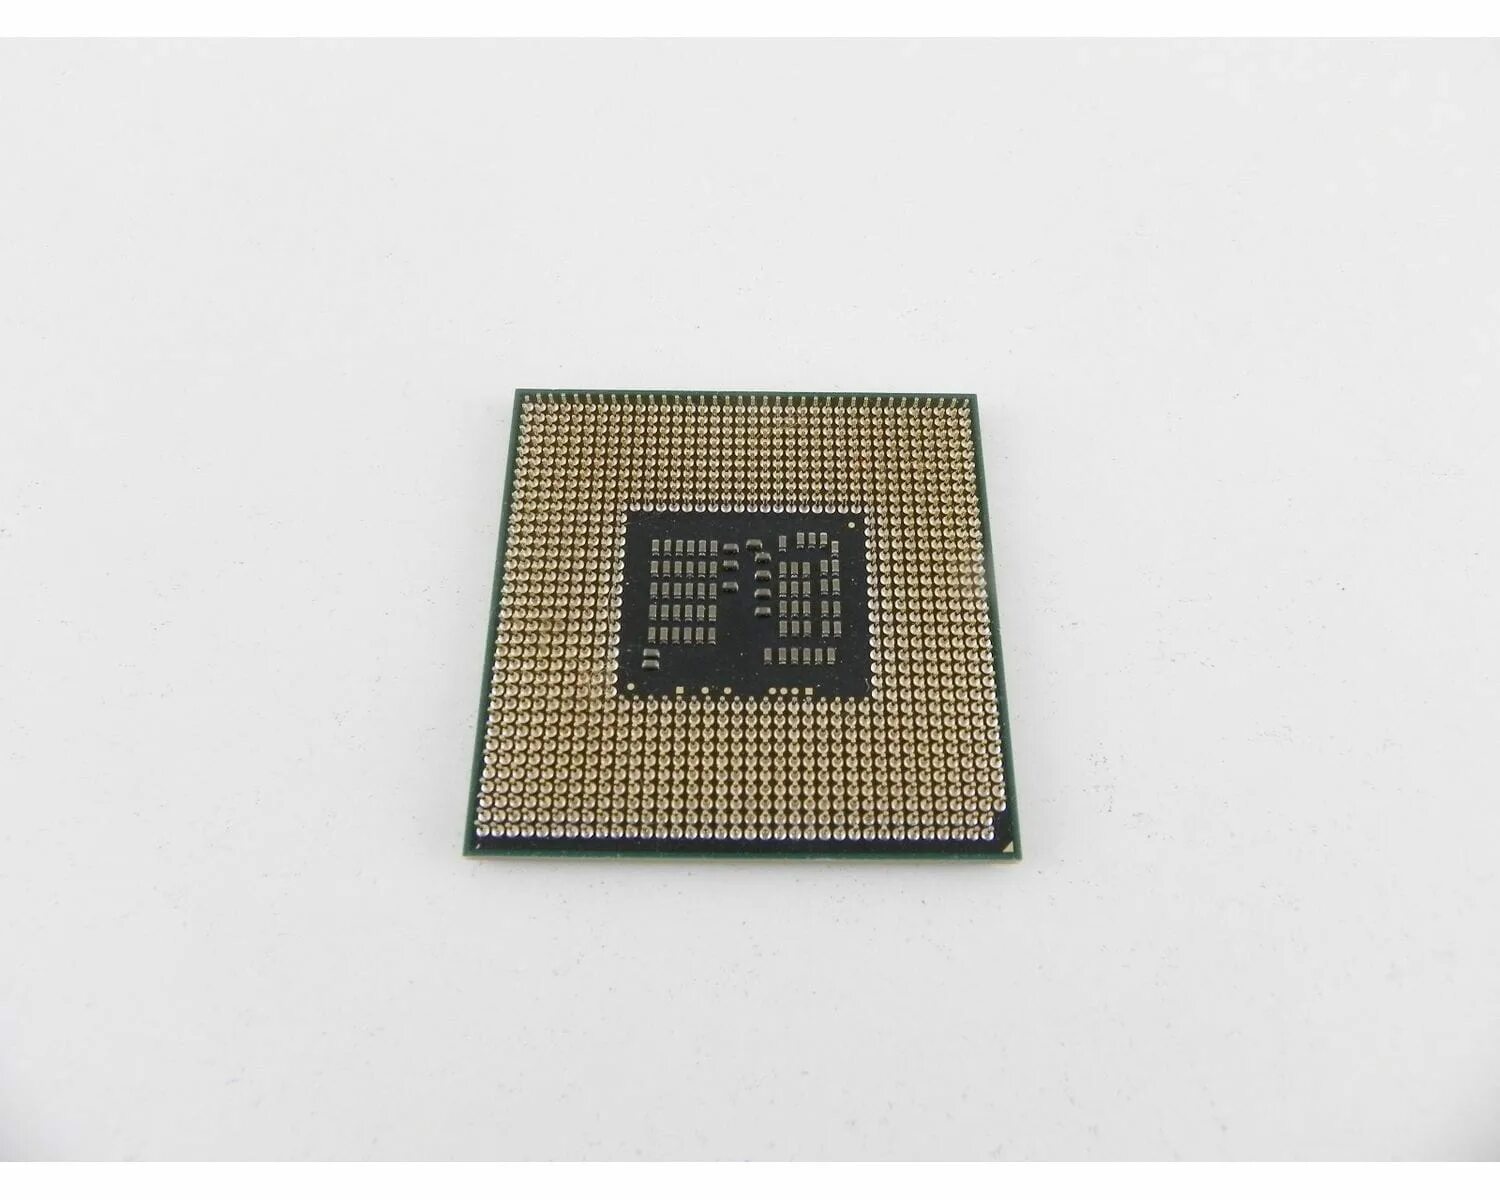 Intel Core i3-370m сокет. Sr0t4 i3-3110m. Core i3-3110m. I3 m370 2.4ГГЦ.